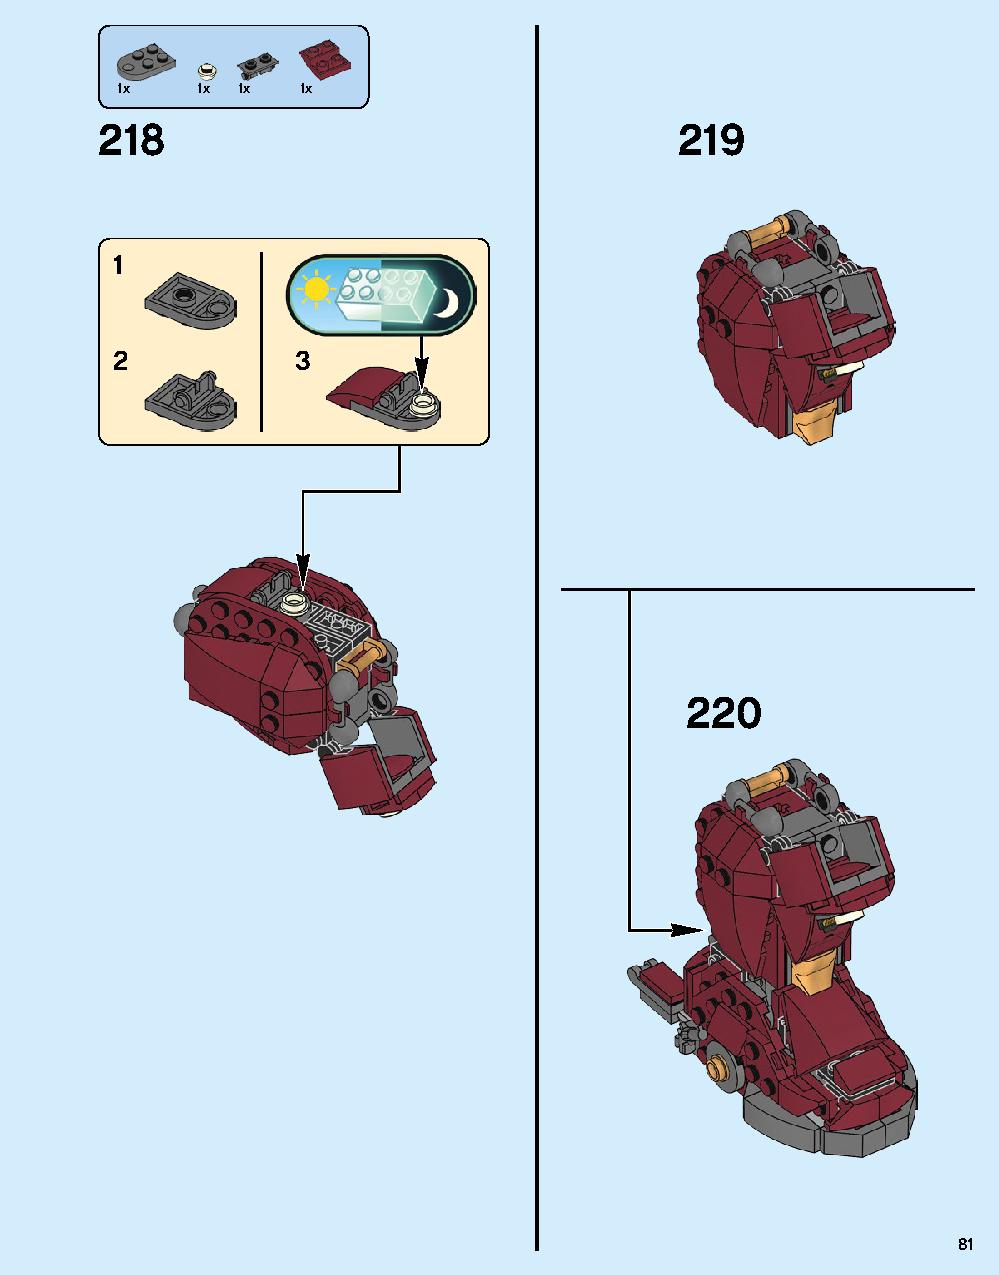 ハルクバスター：ウルトロン・エディション 76105 レゴの商品情報 レゴの説明書・組立方法 81 page